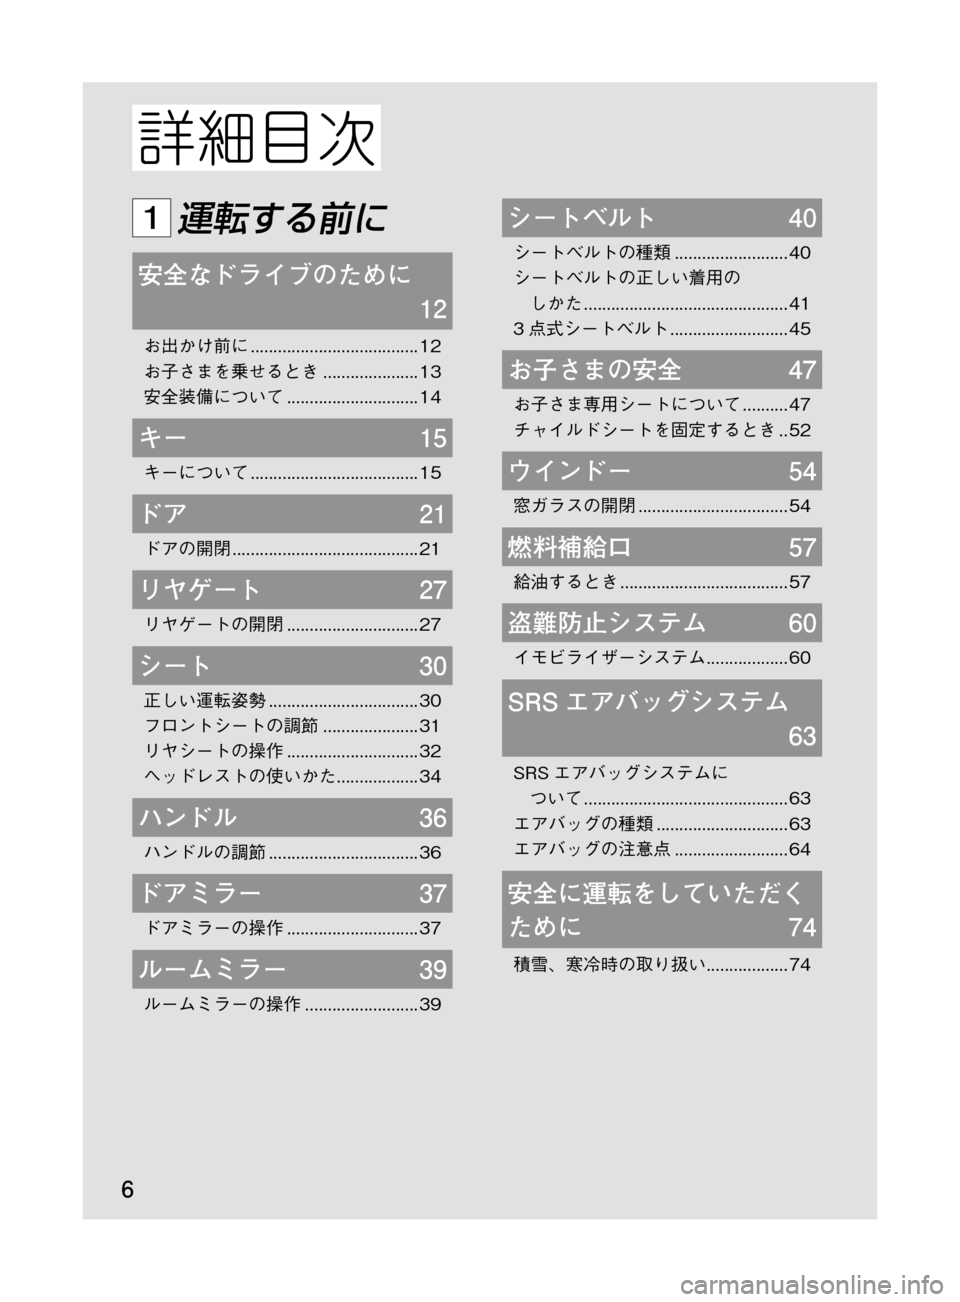 MAZDA MODEL DEMIO 2011  デミオ｜取扱説明書 (in Japanese) �
��P�S�N��/�P���% 